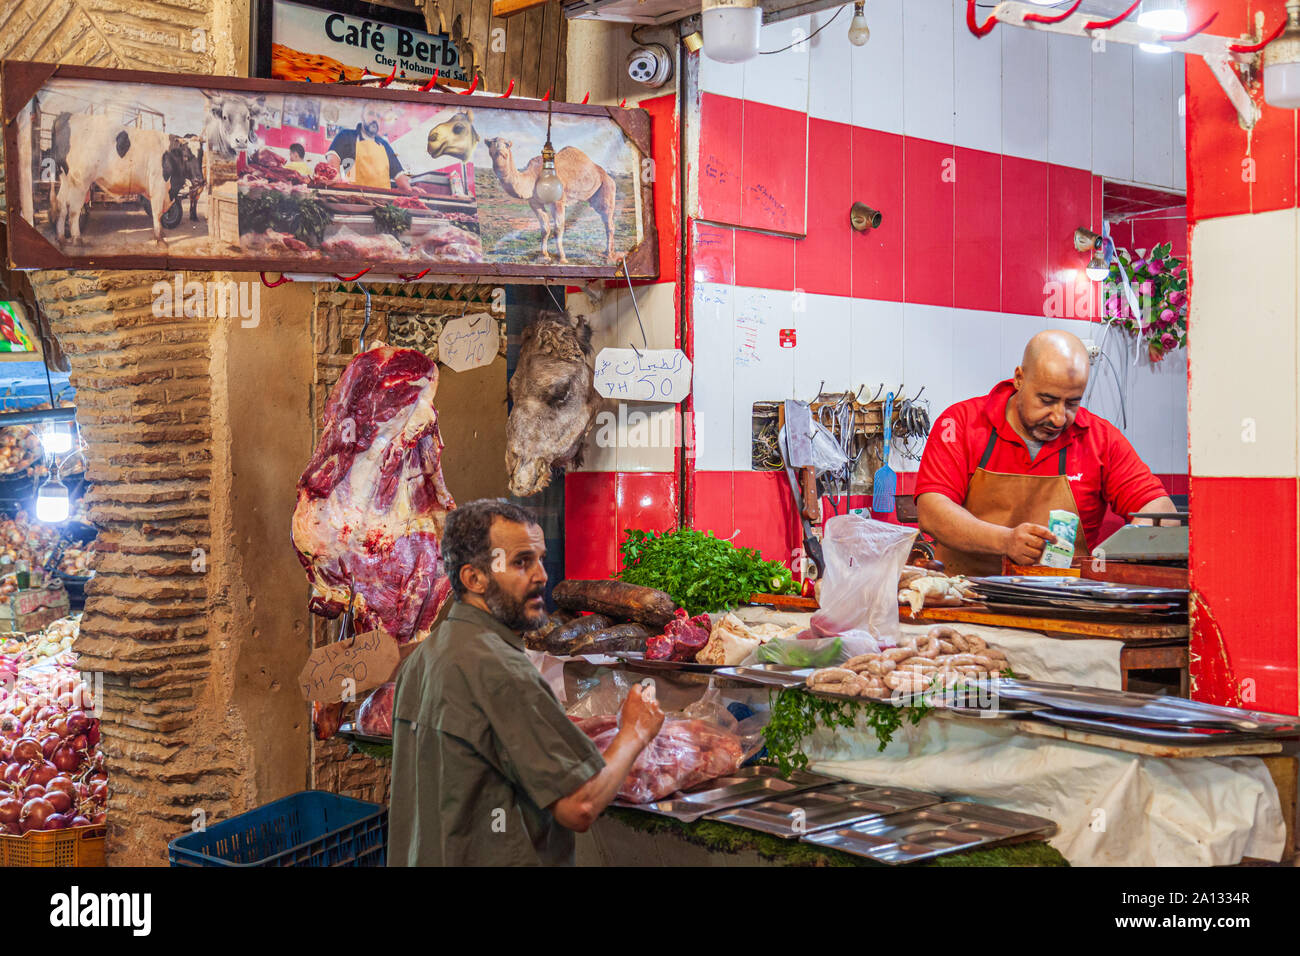 Butcher à fes souk medina maroc vendre la viande de chameau avec des chameaux head sur l'affichage Banque D'Images